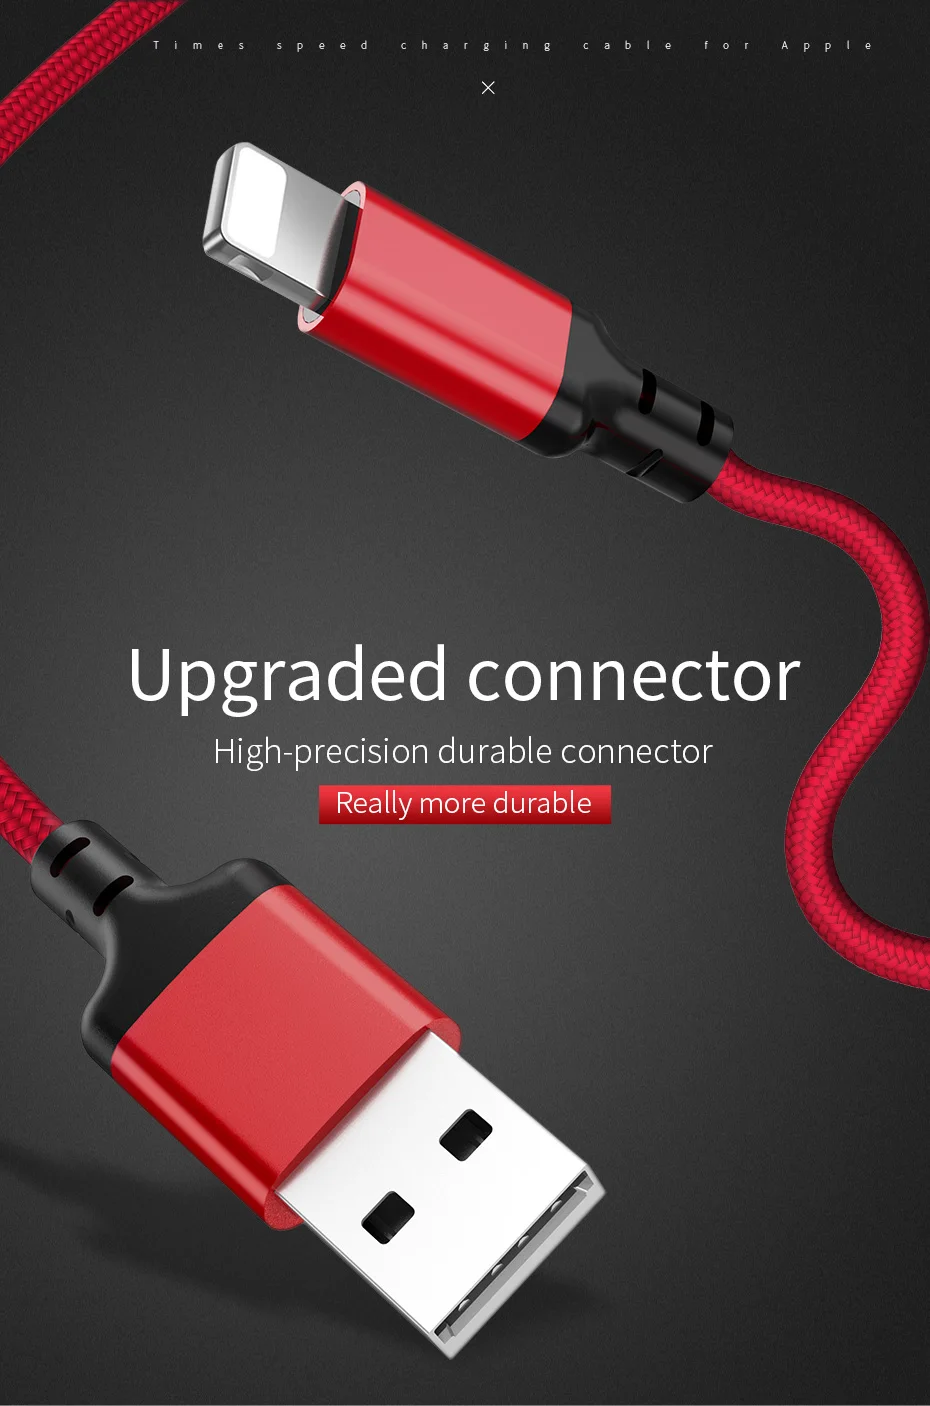 HOCO trenzado de carga rápida rayo USB Cable De Sincronización De Datos Para Iphone X 8 7 6s 5